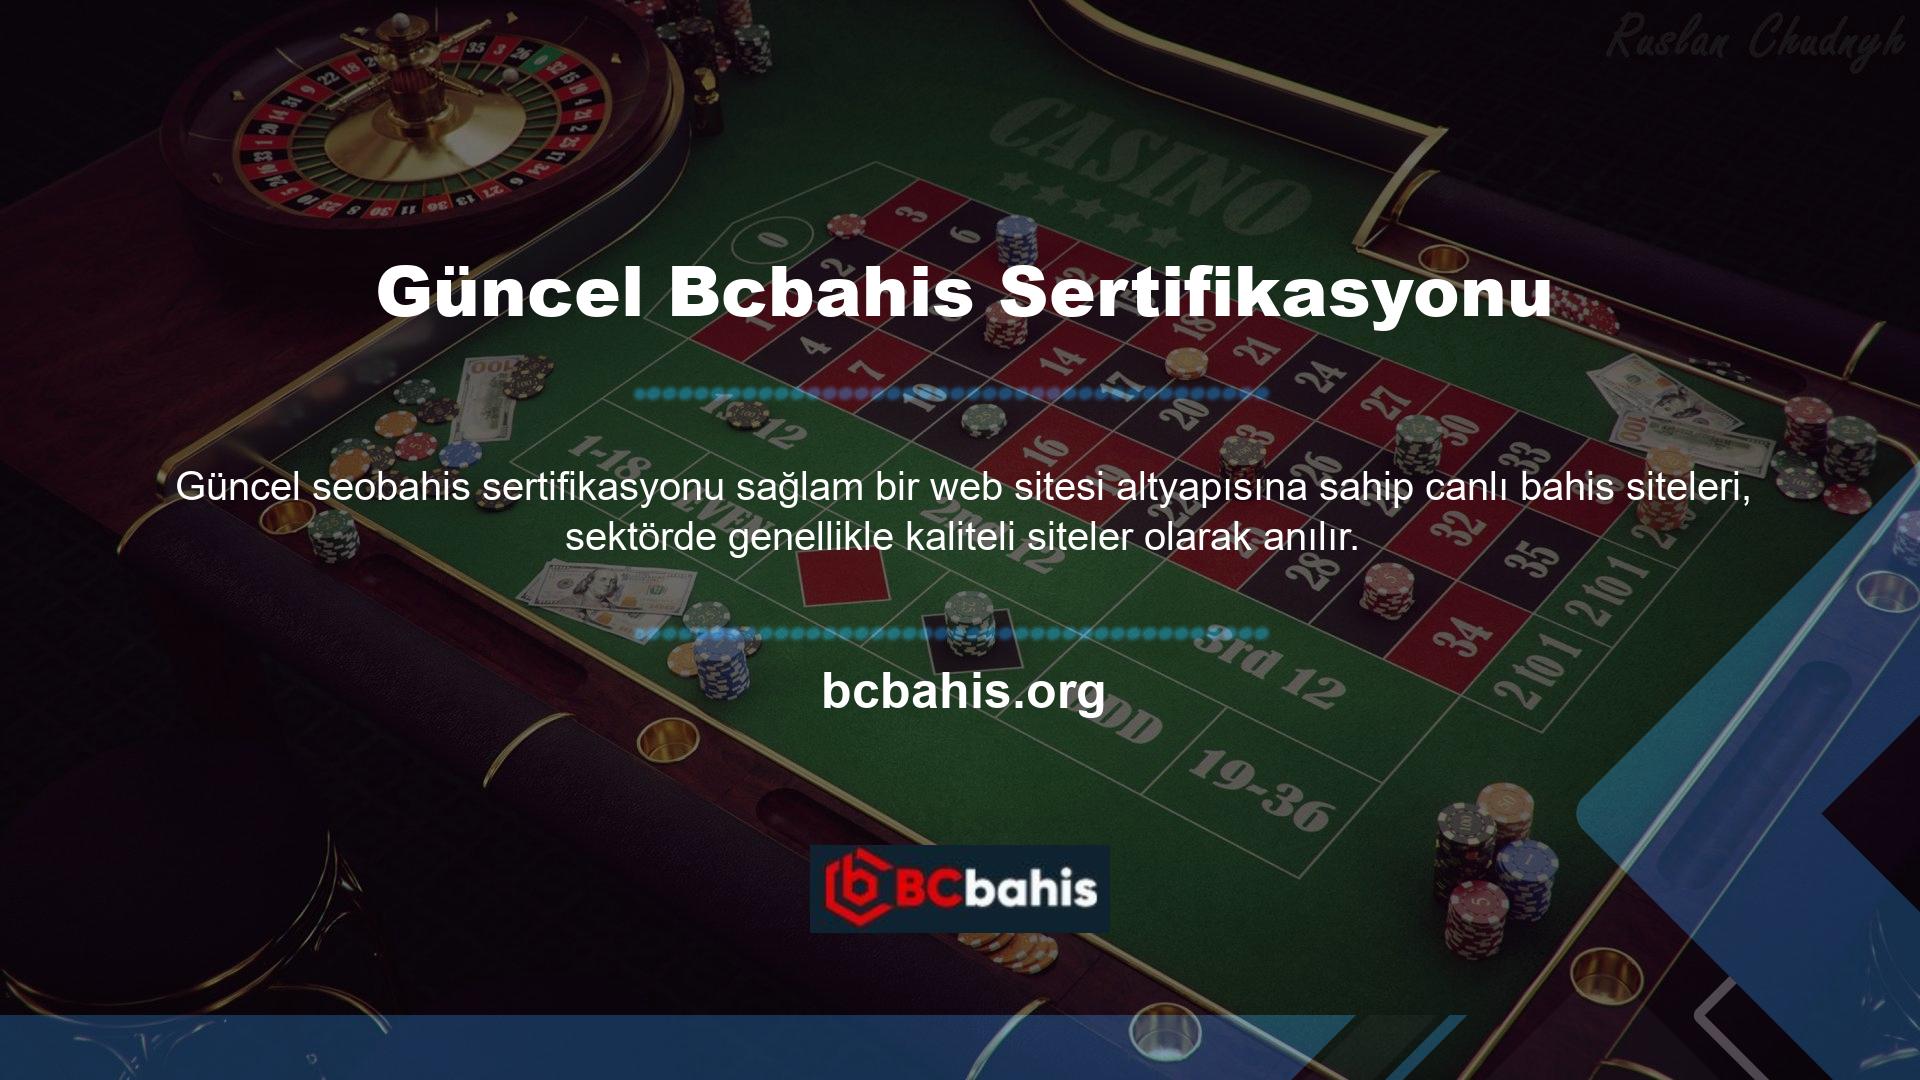 Aslında mevcut Bcbahis sertifikası canlı bahis hizmetlerinde birçok oyun sunmaktadır